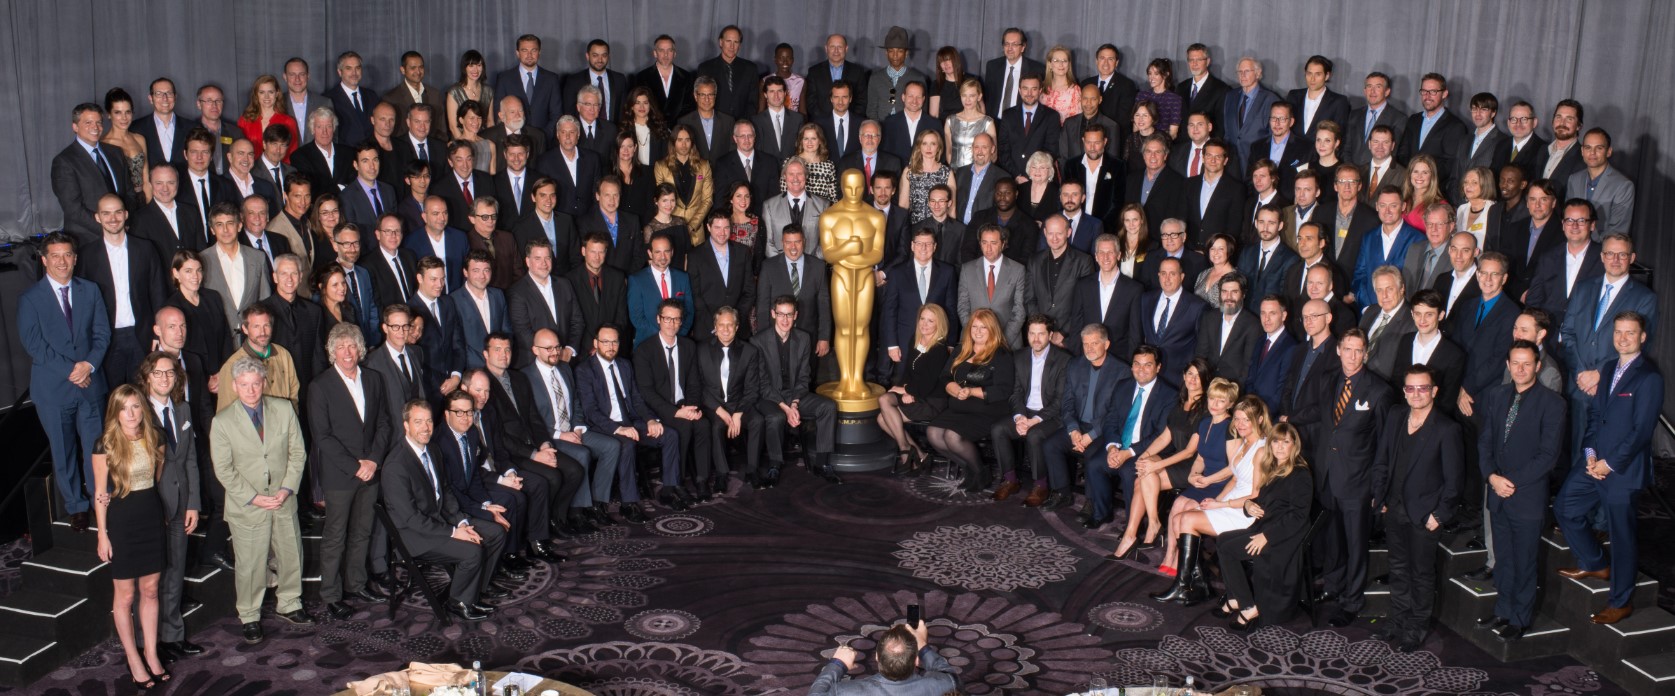 групповое фото всех номинантов на "Оскар 2018"